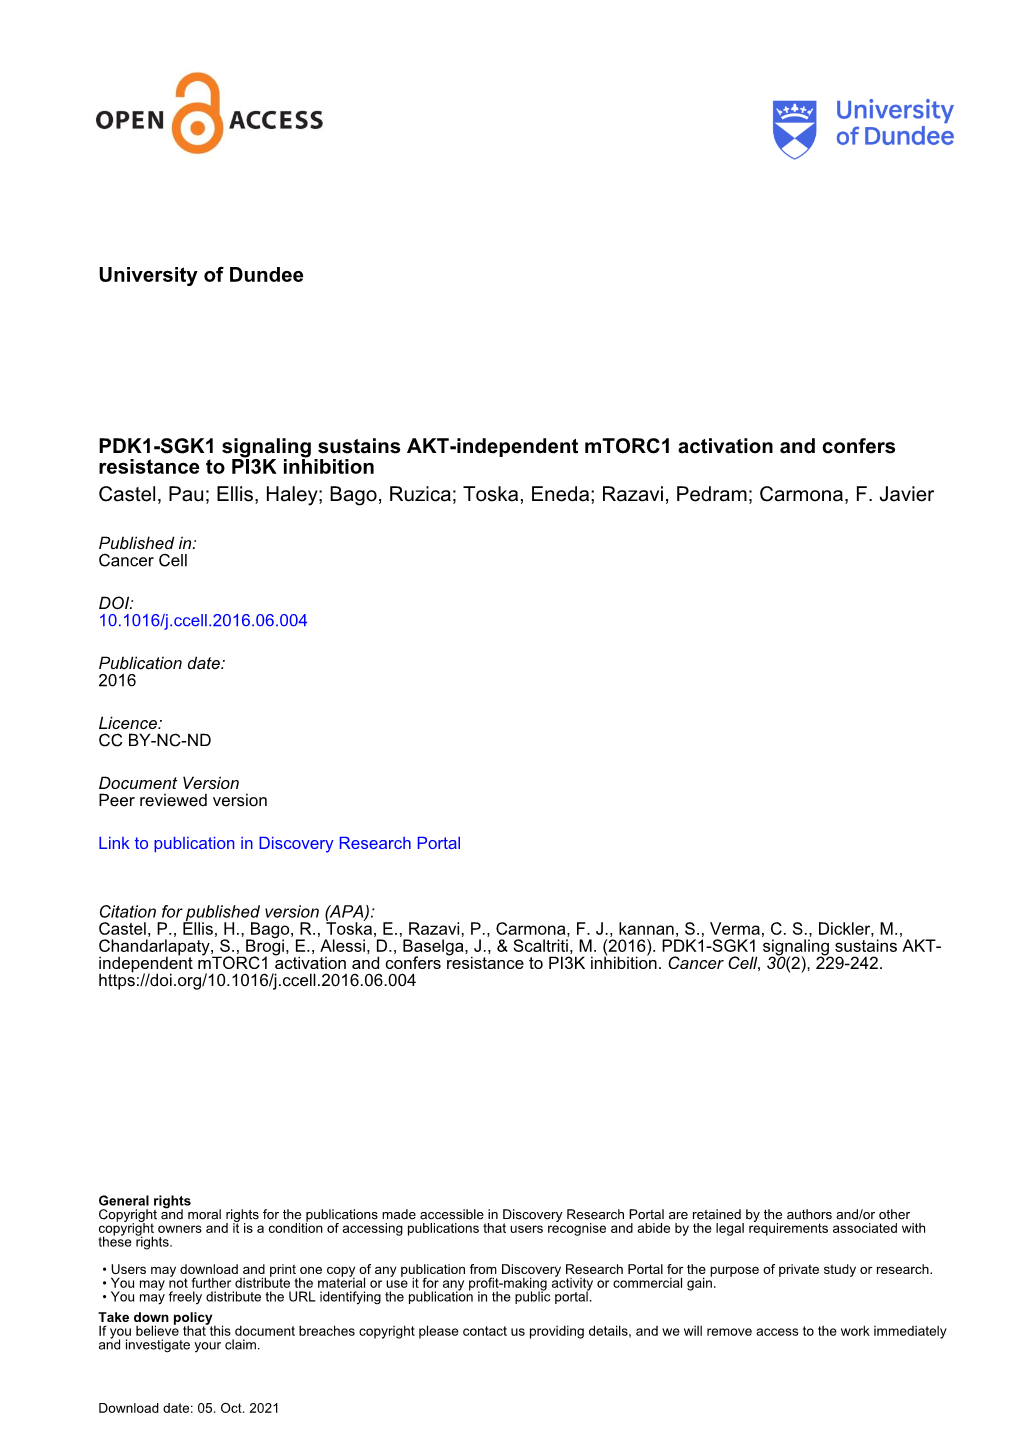 University of Dundee PDK1-SGK1 Signaling Sustains AKT